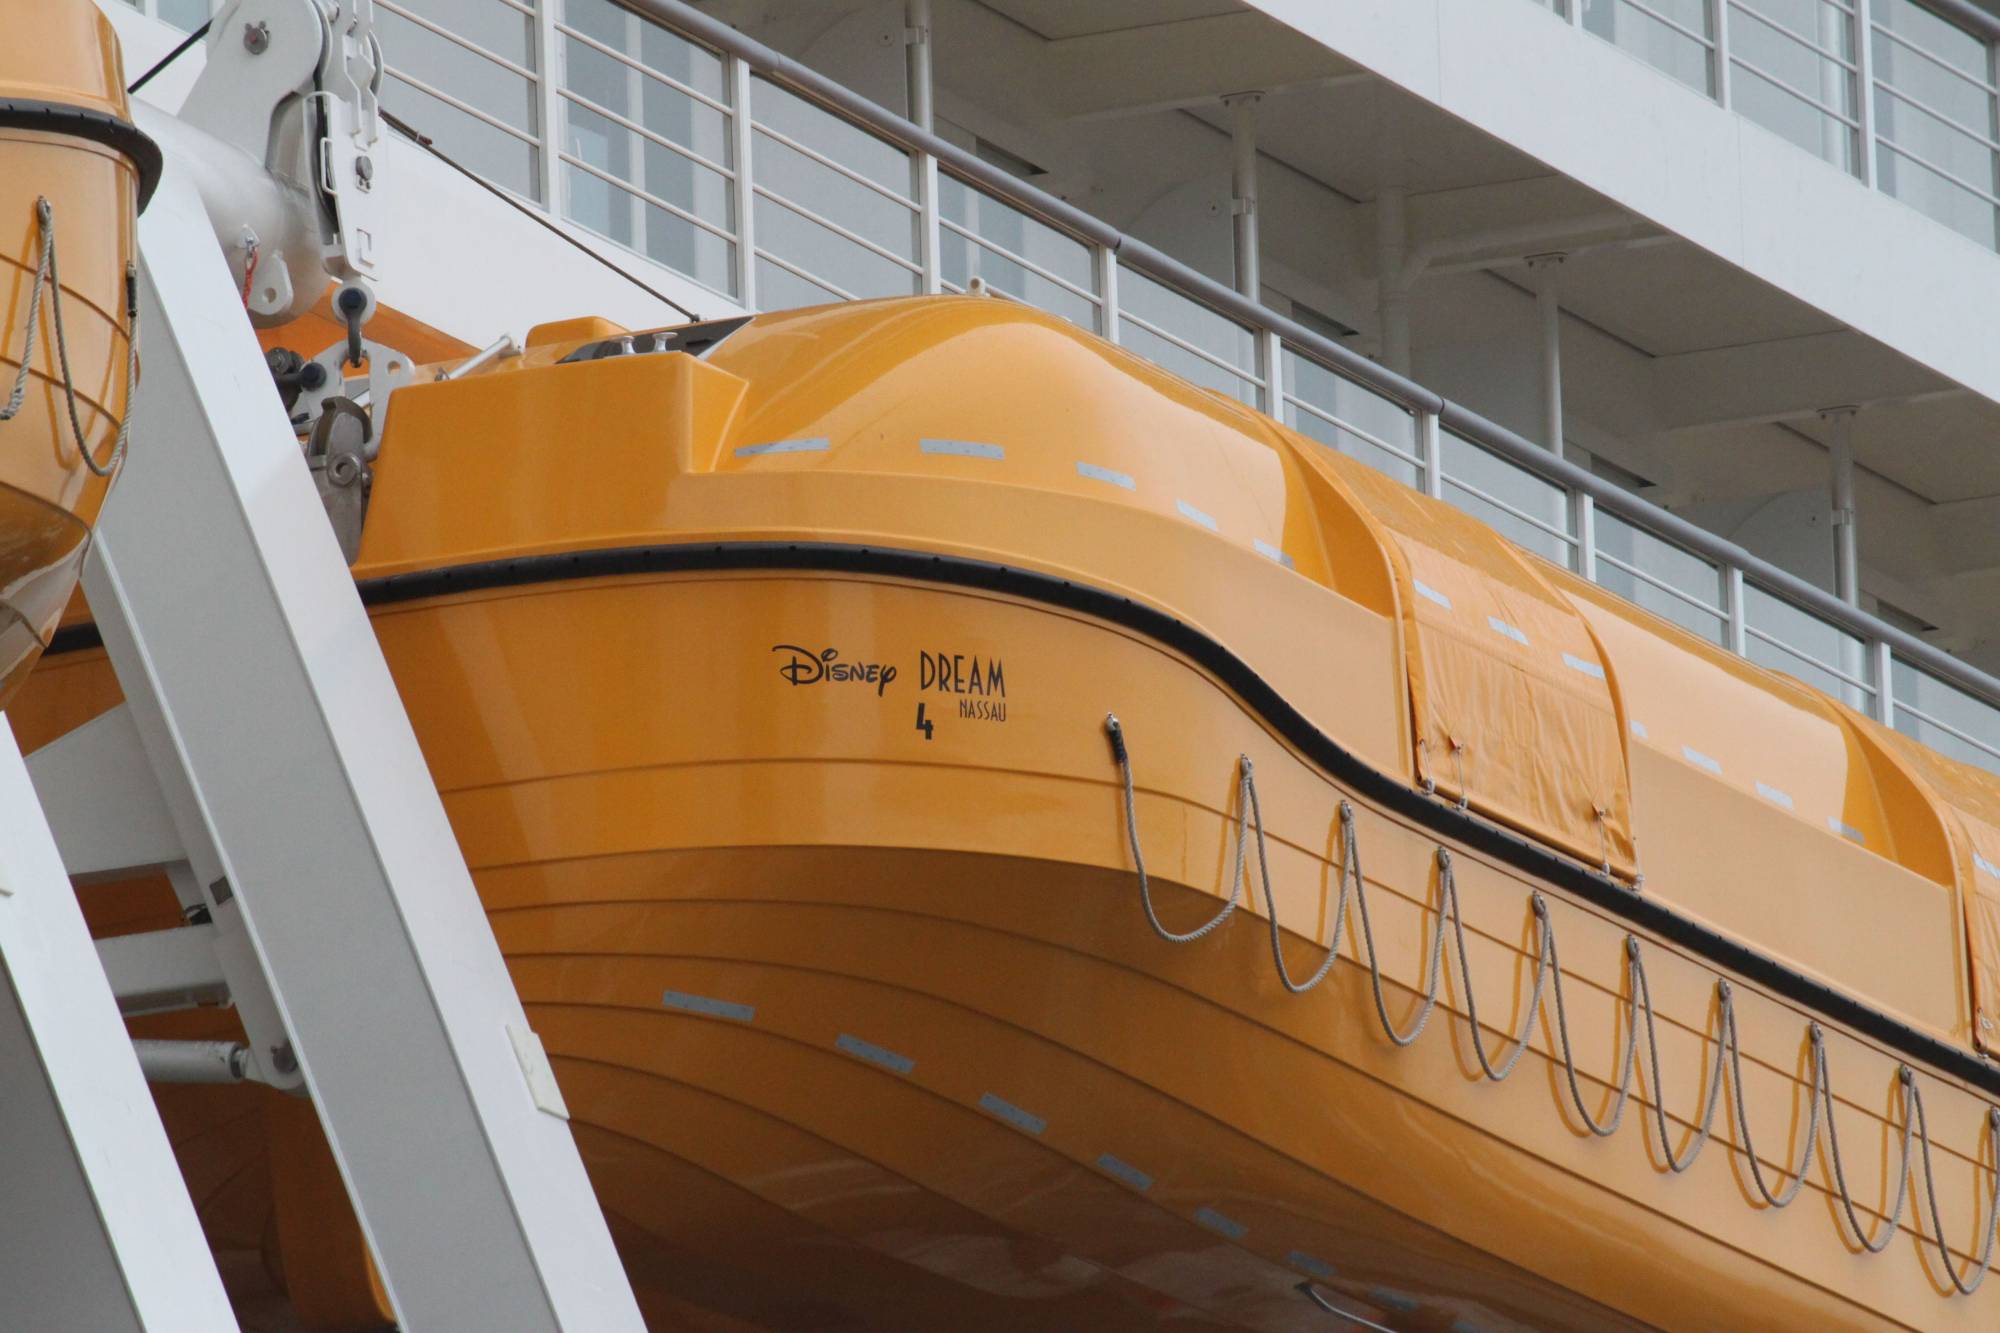 Disney Dream at Meyer Werft